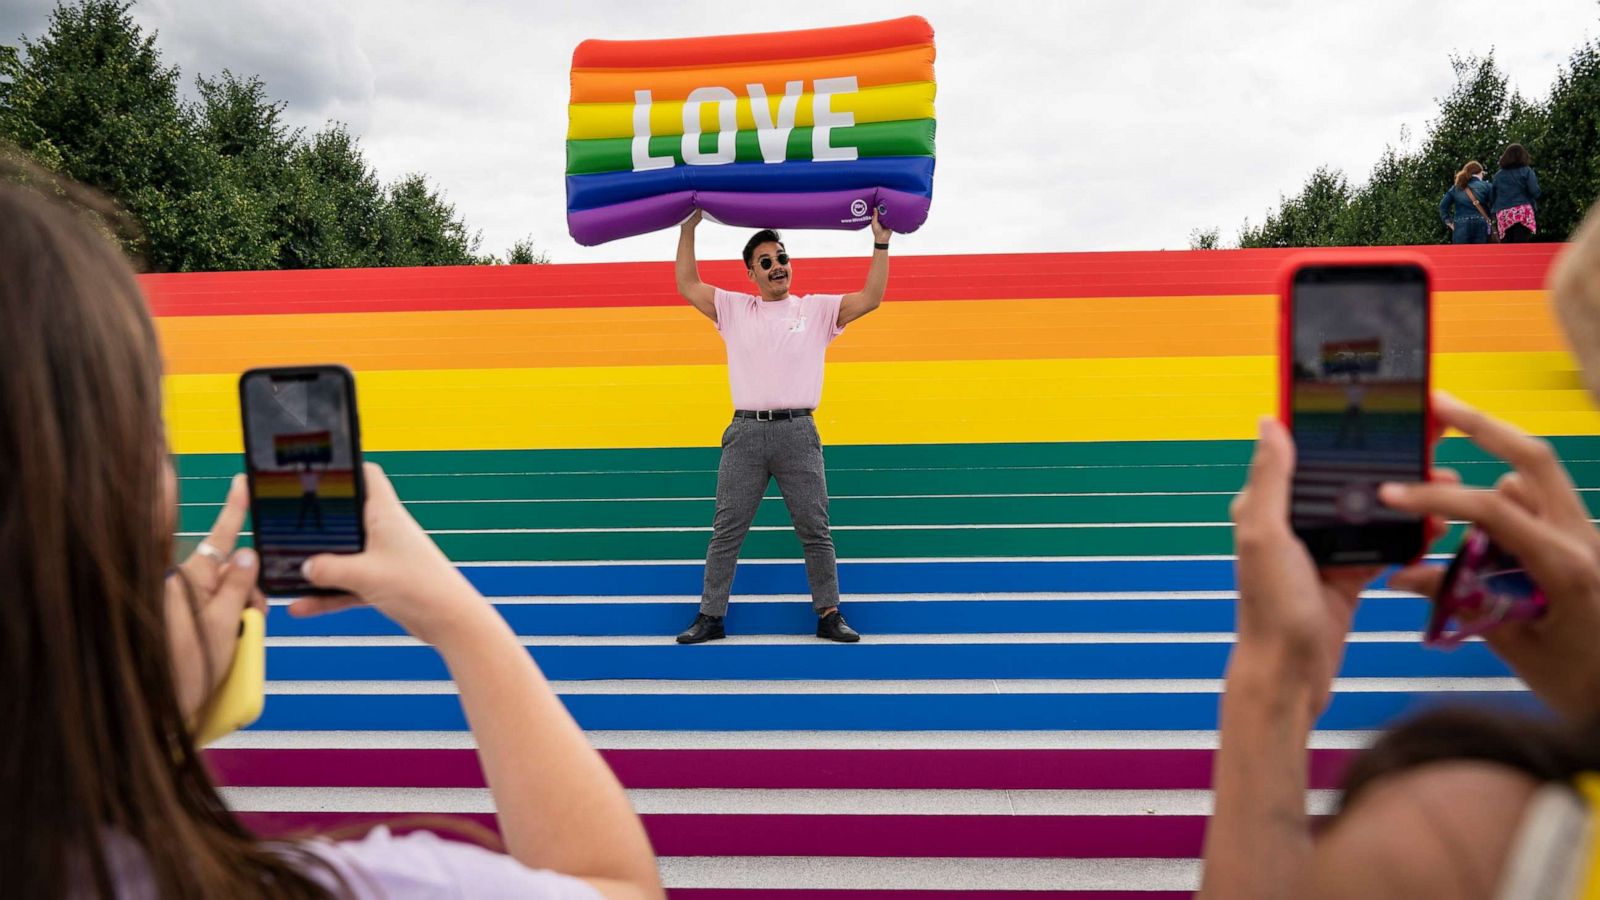 nyc gay pride parties 2021